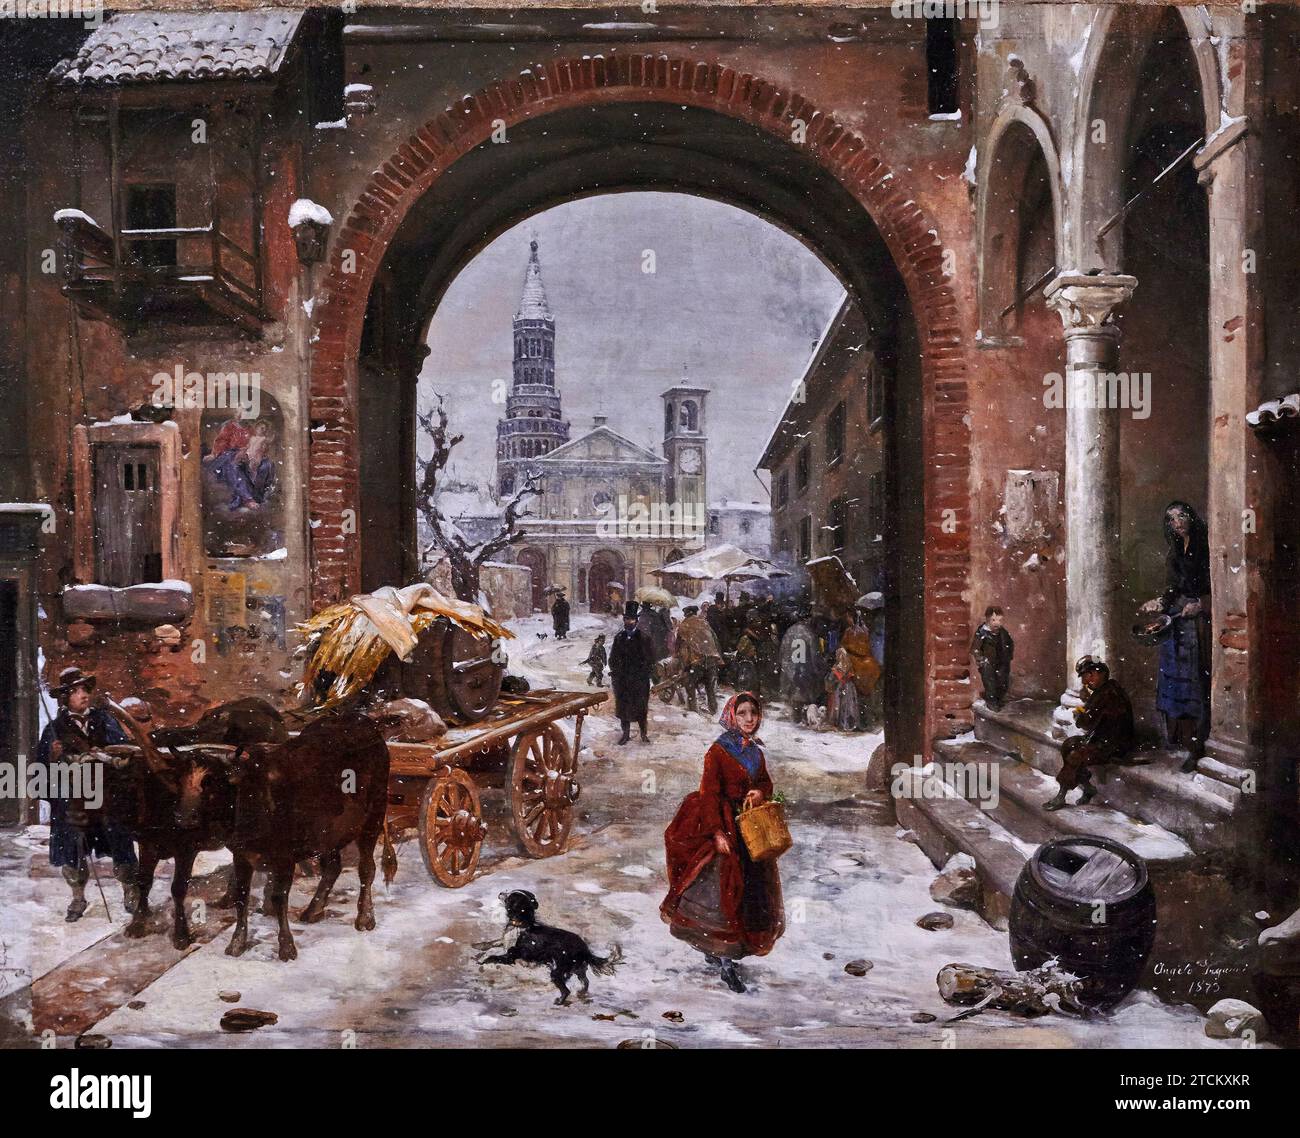 Mercato invernale di fronte all’ Abbazia di Chiaravalle - olio su tela - Angelo Inganni - 1873 - colección privada Foto de stock